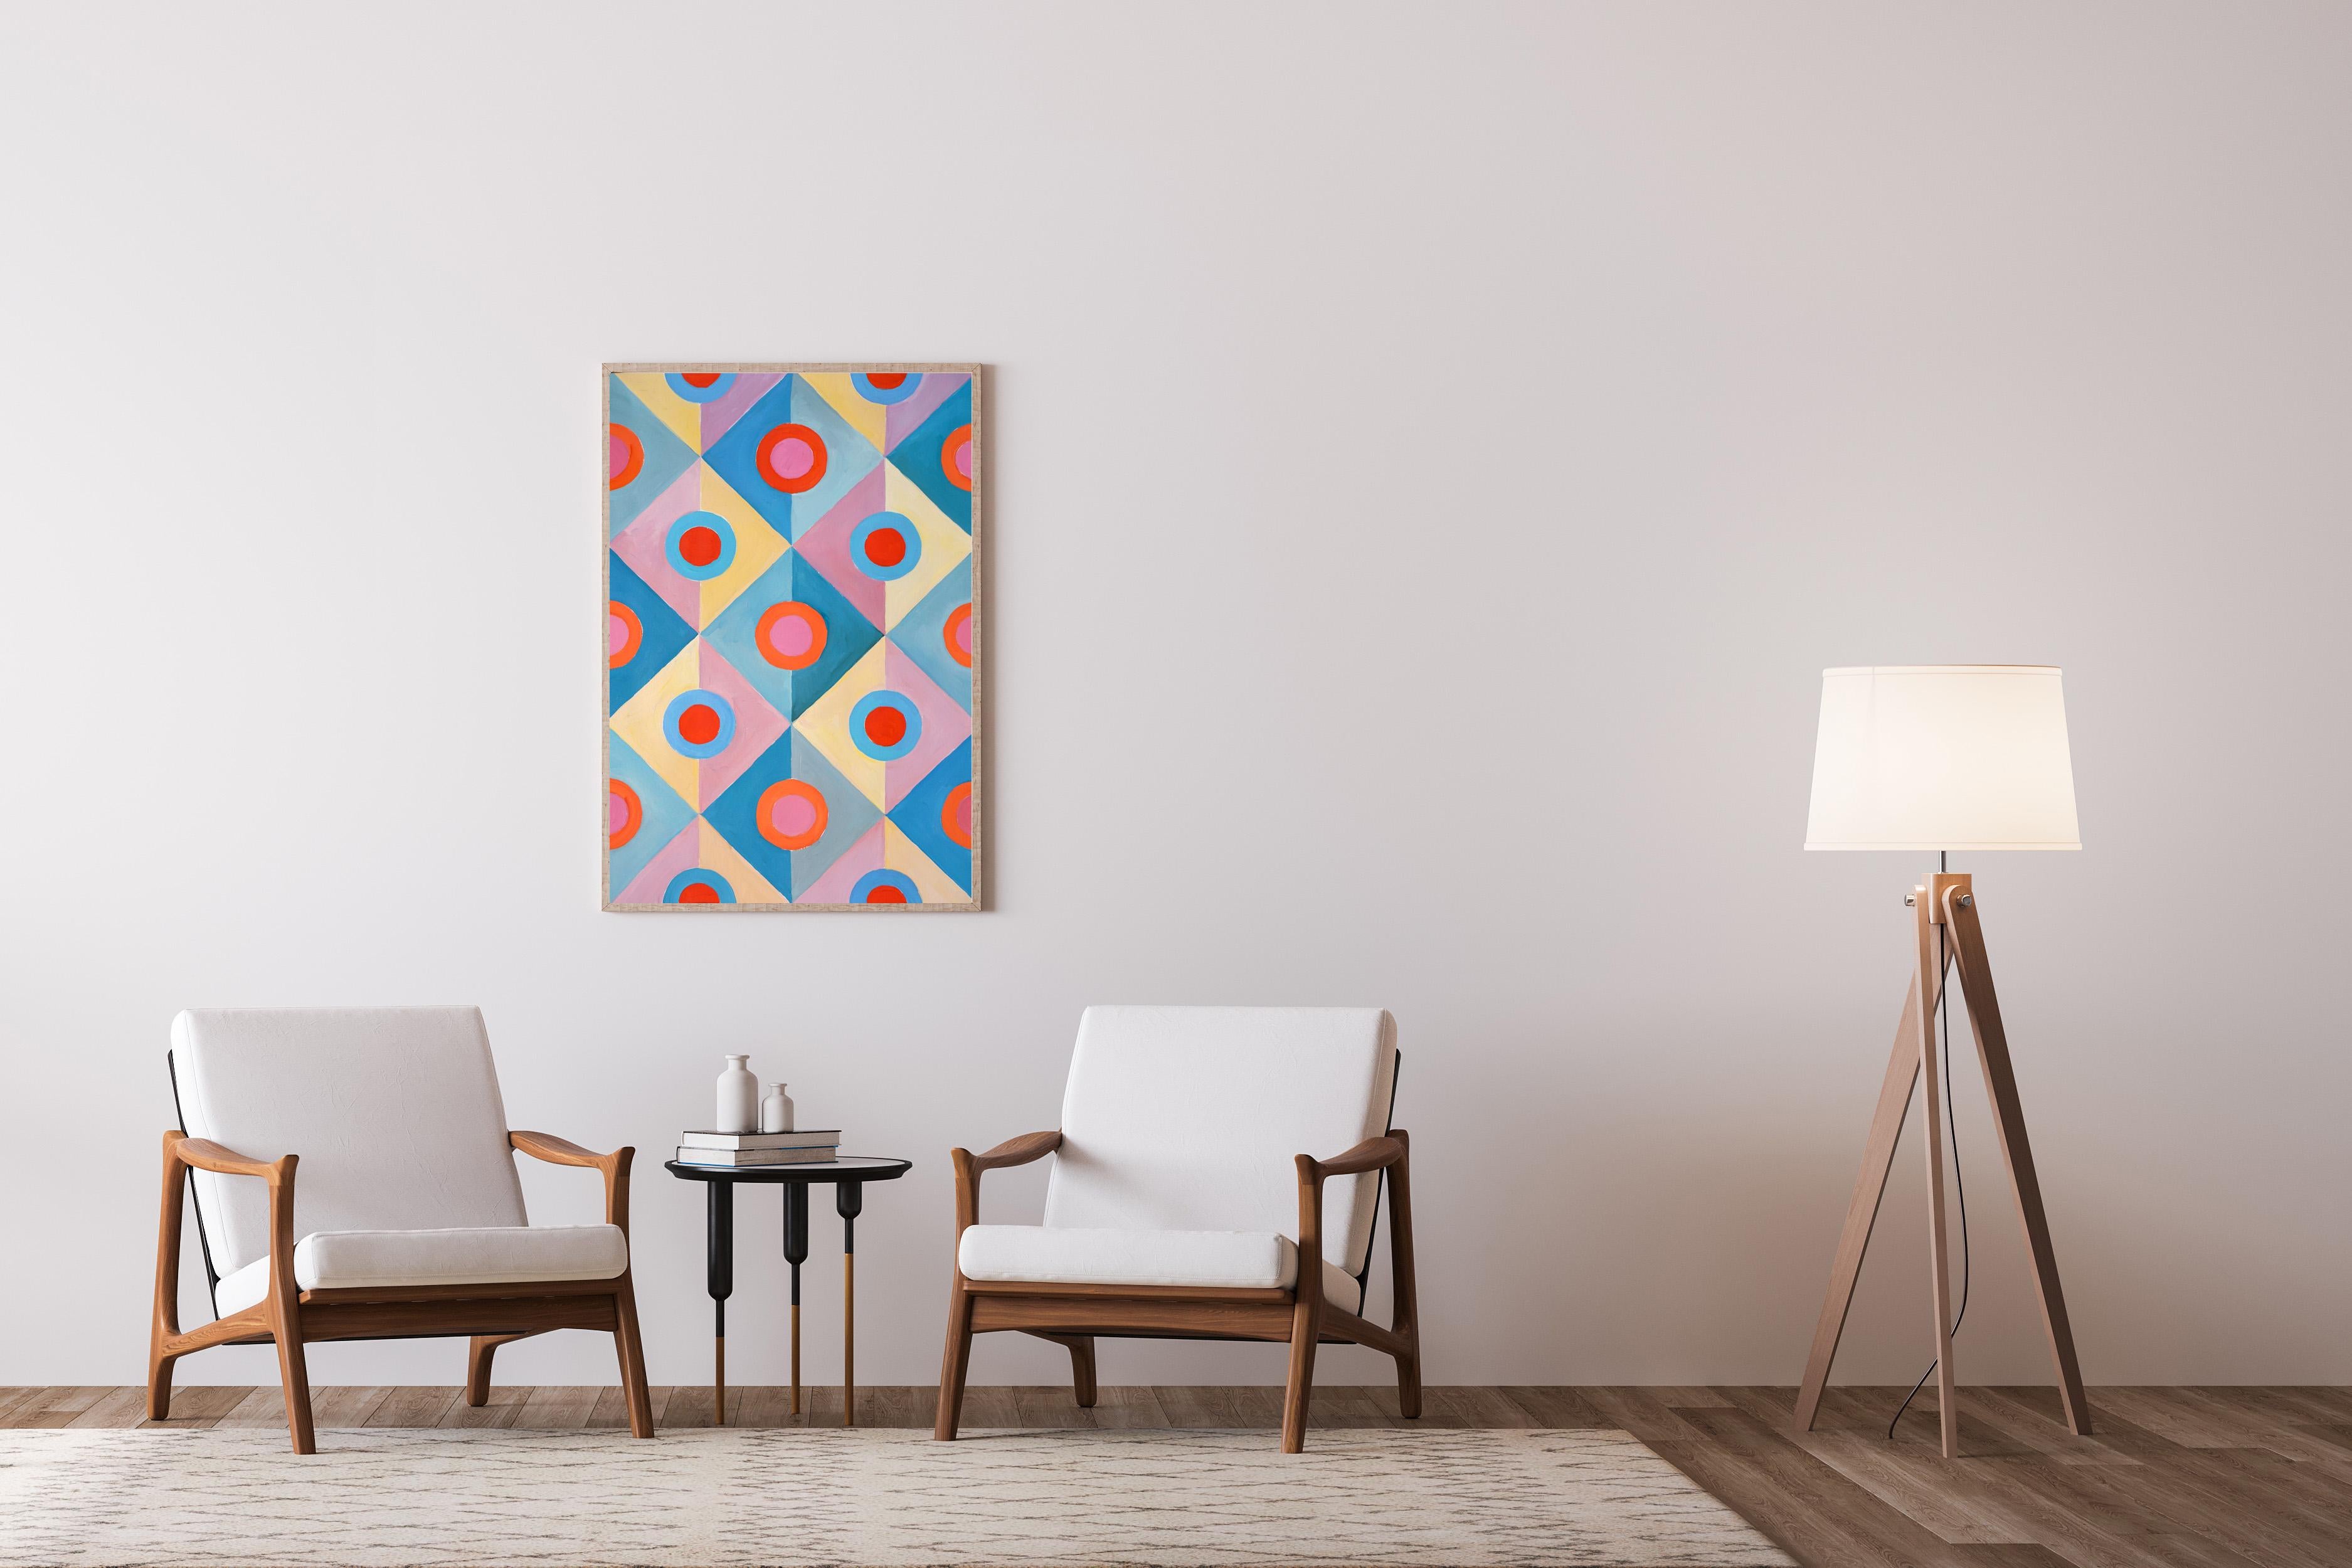 Miroirs Art Déco pastel, motifs géométriques turquoises et roses en carreaux, symétrie  - Art déco Painting par Natalia Roman